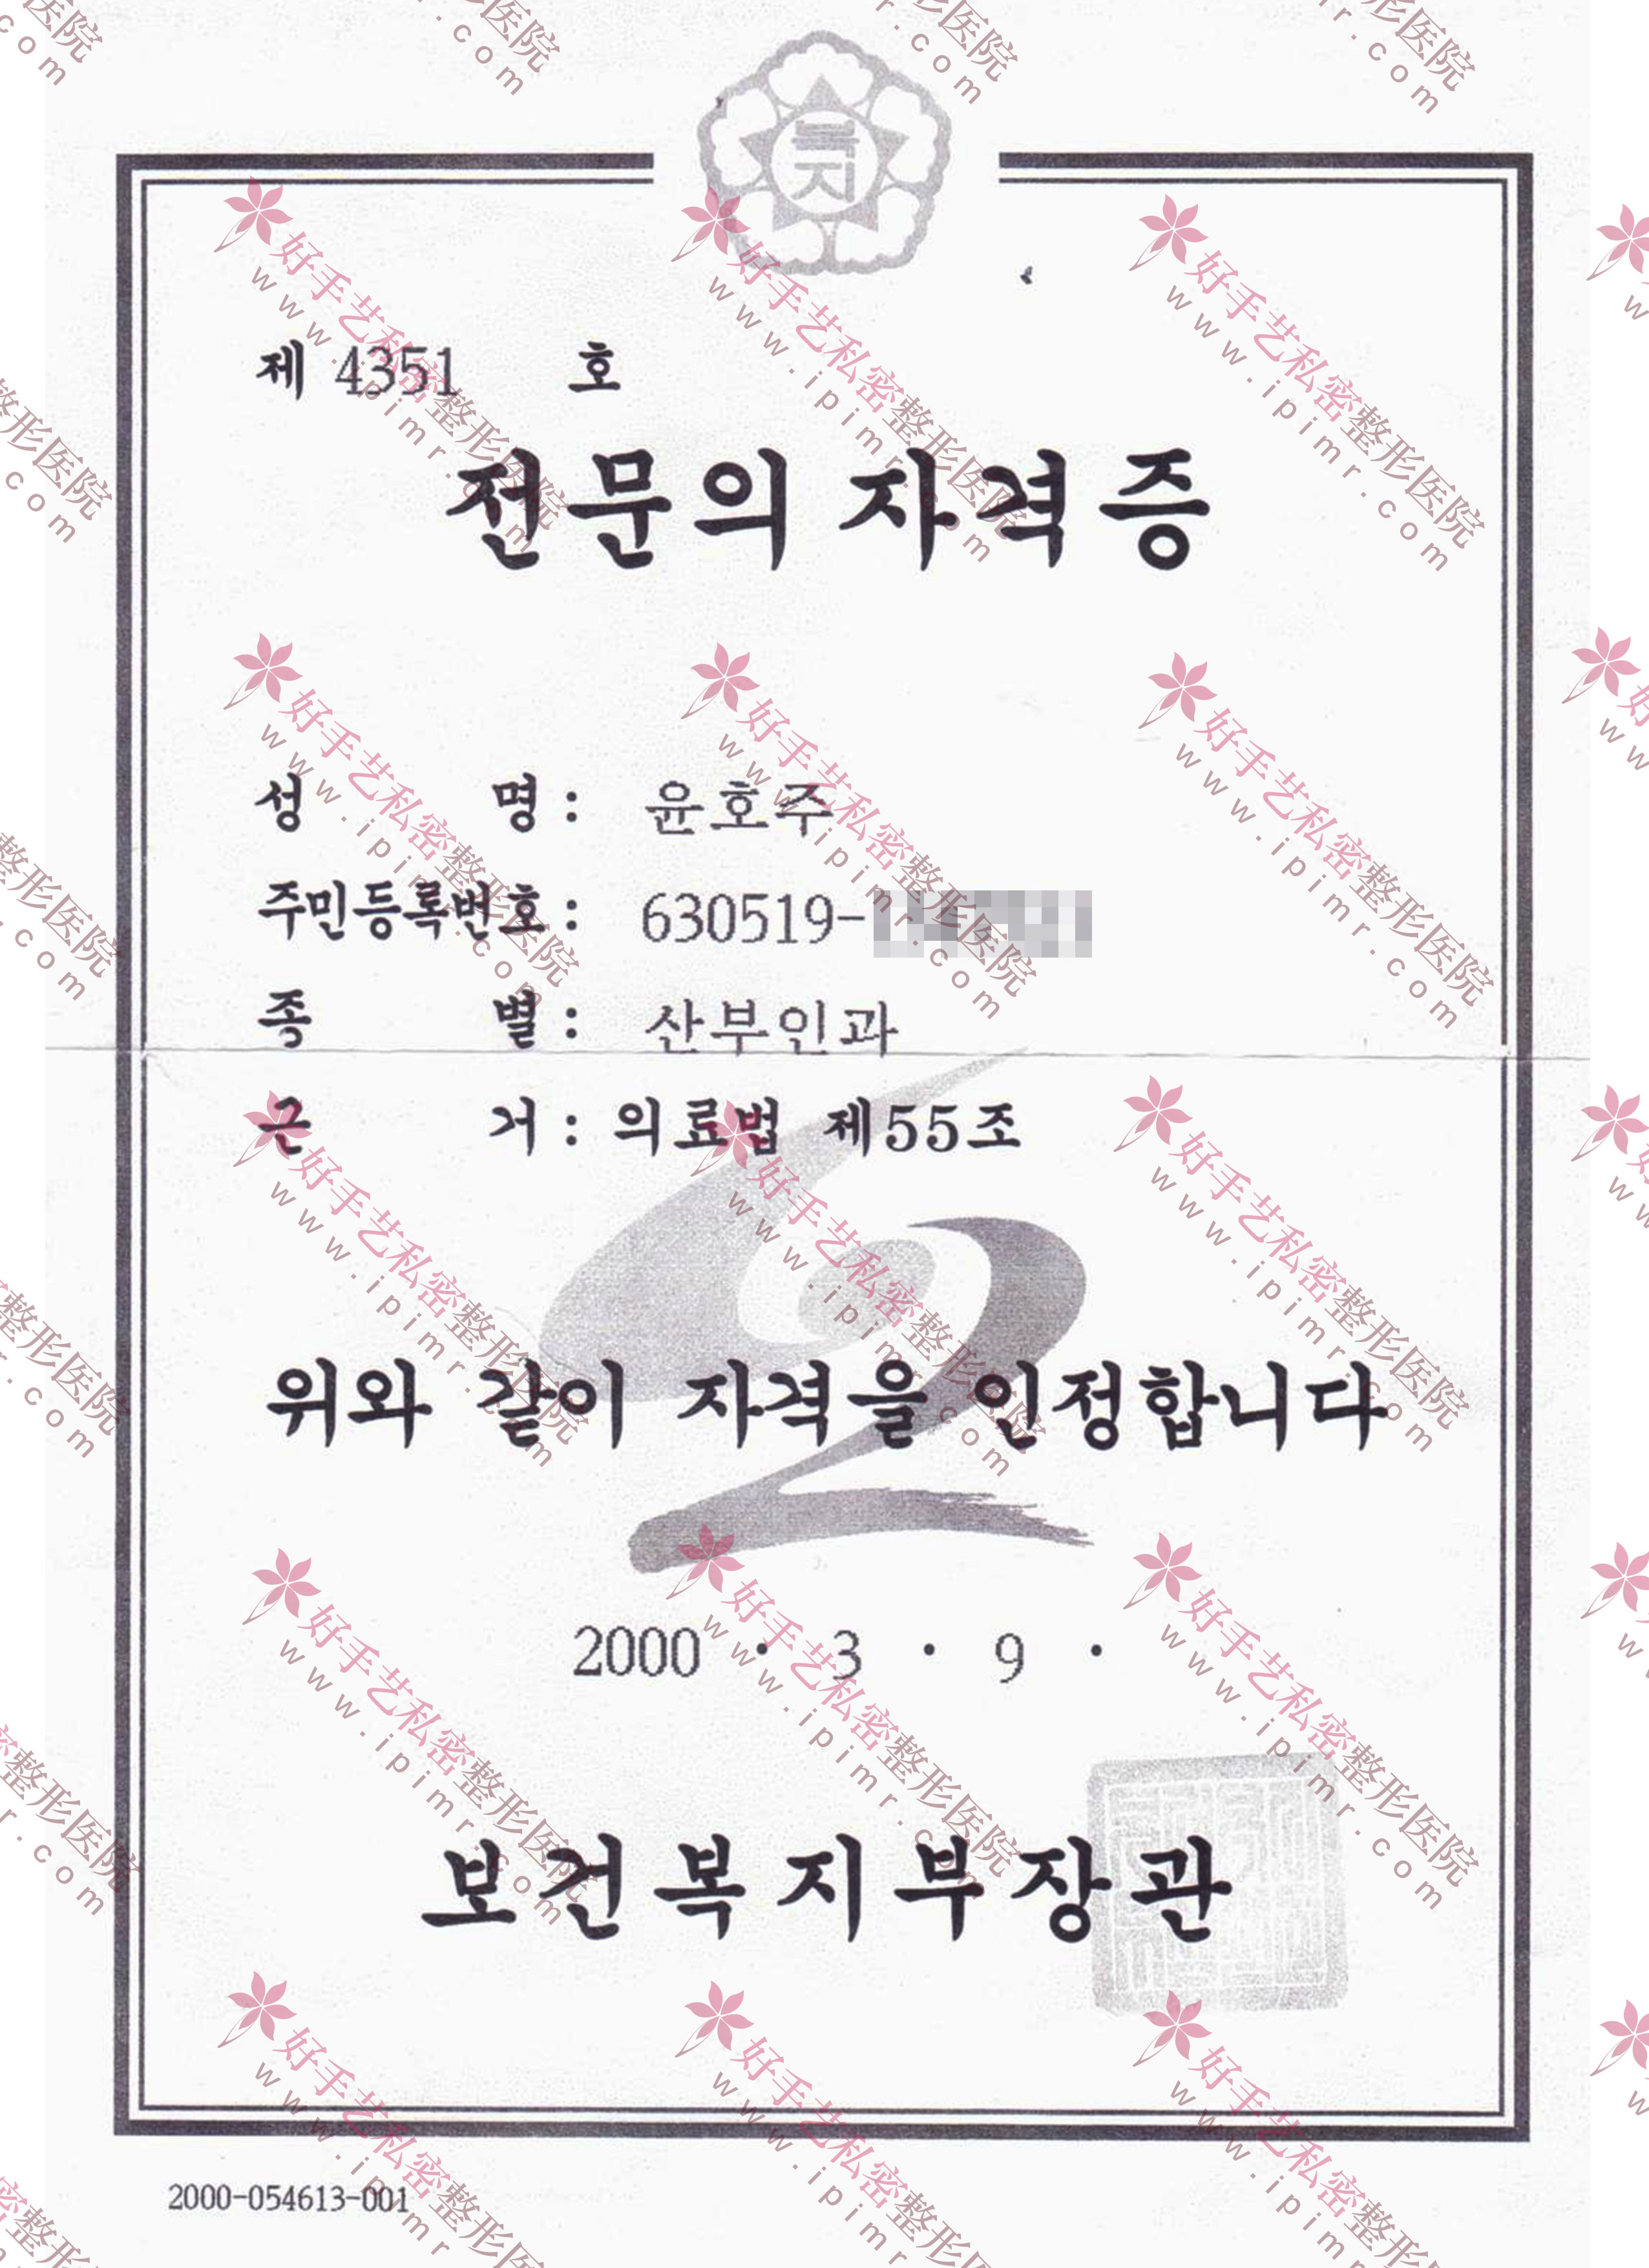 韓國保健福祉部頒發的專業醫生資格證